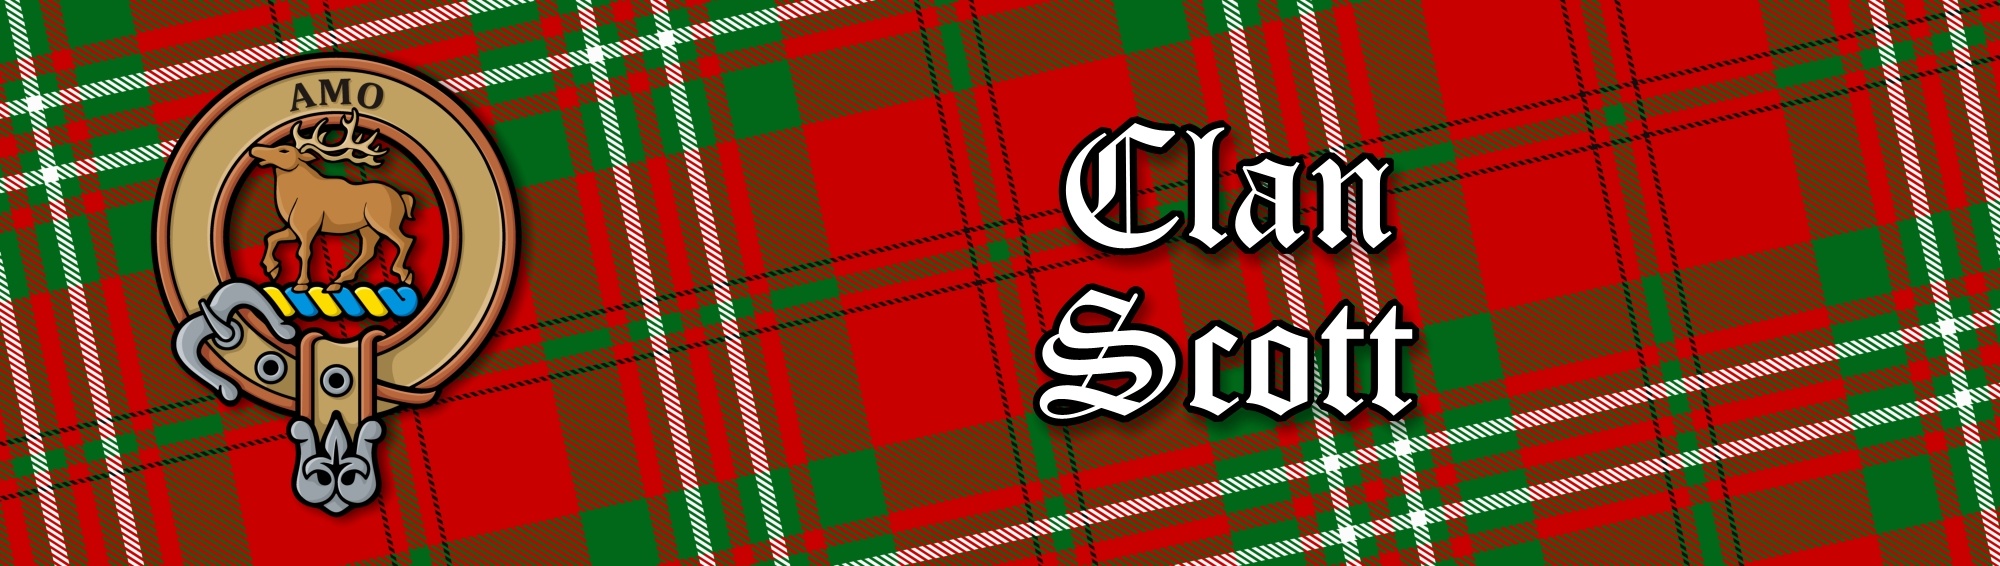 Clan Scott Red Tartan Collection